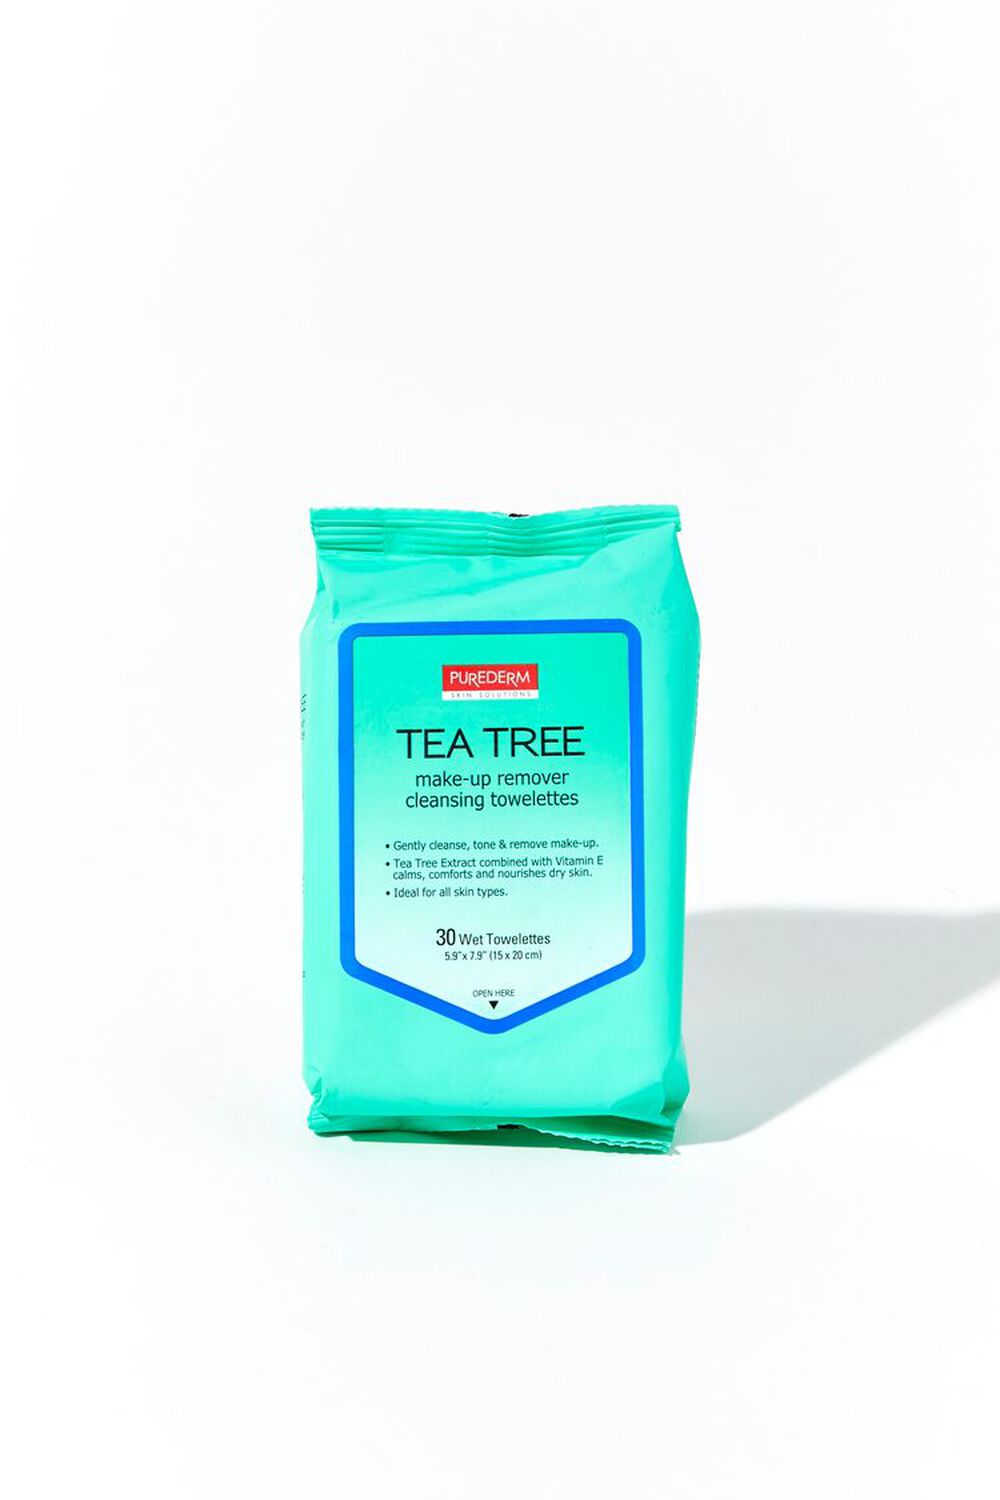 TEA TREE Purederm Tea Tree Cleansing Towelettes, image 1